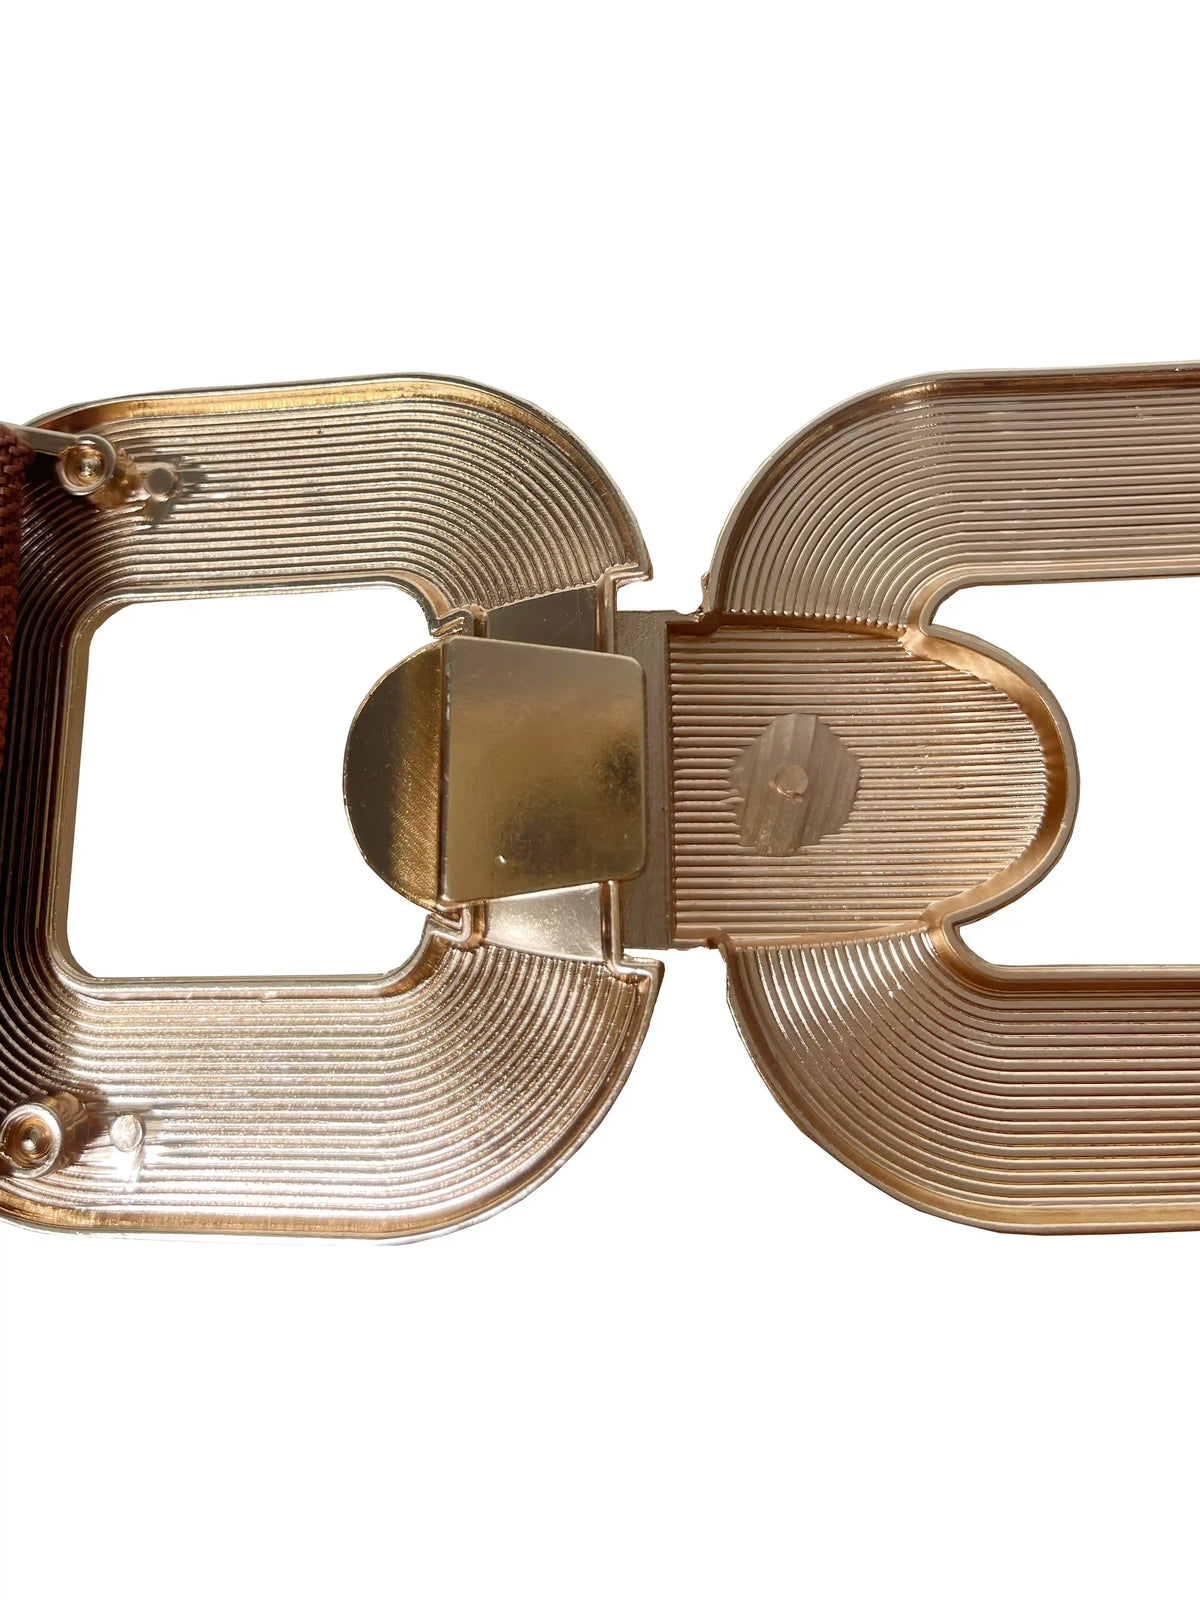 Cece - Cintura elasticizzata a vita alta beige e oro